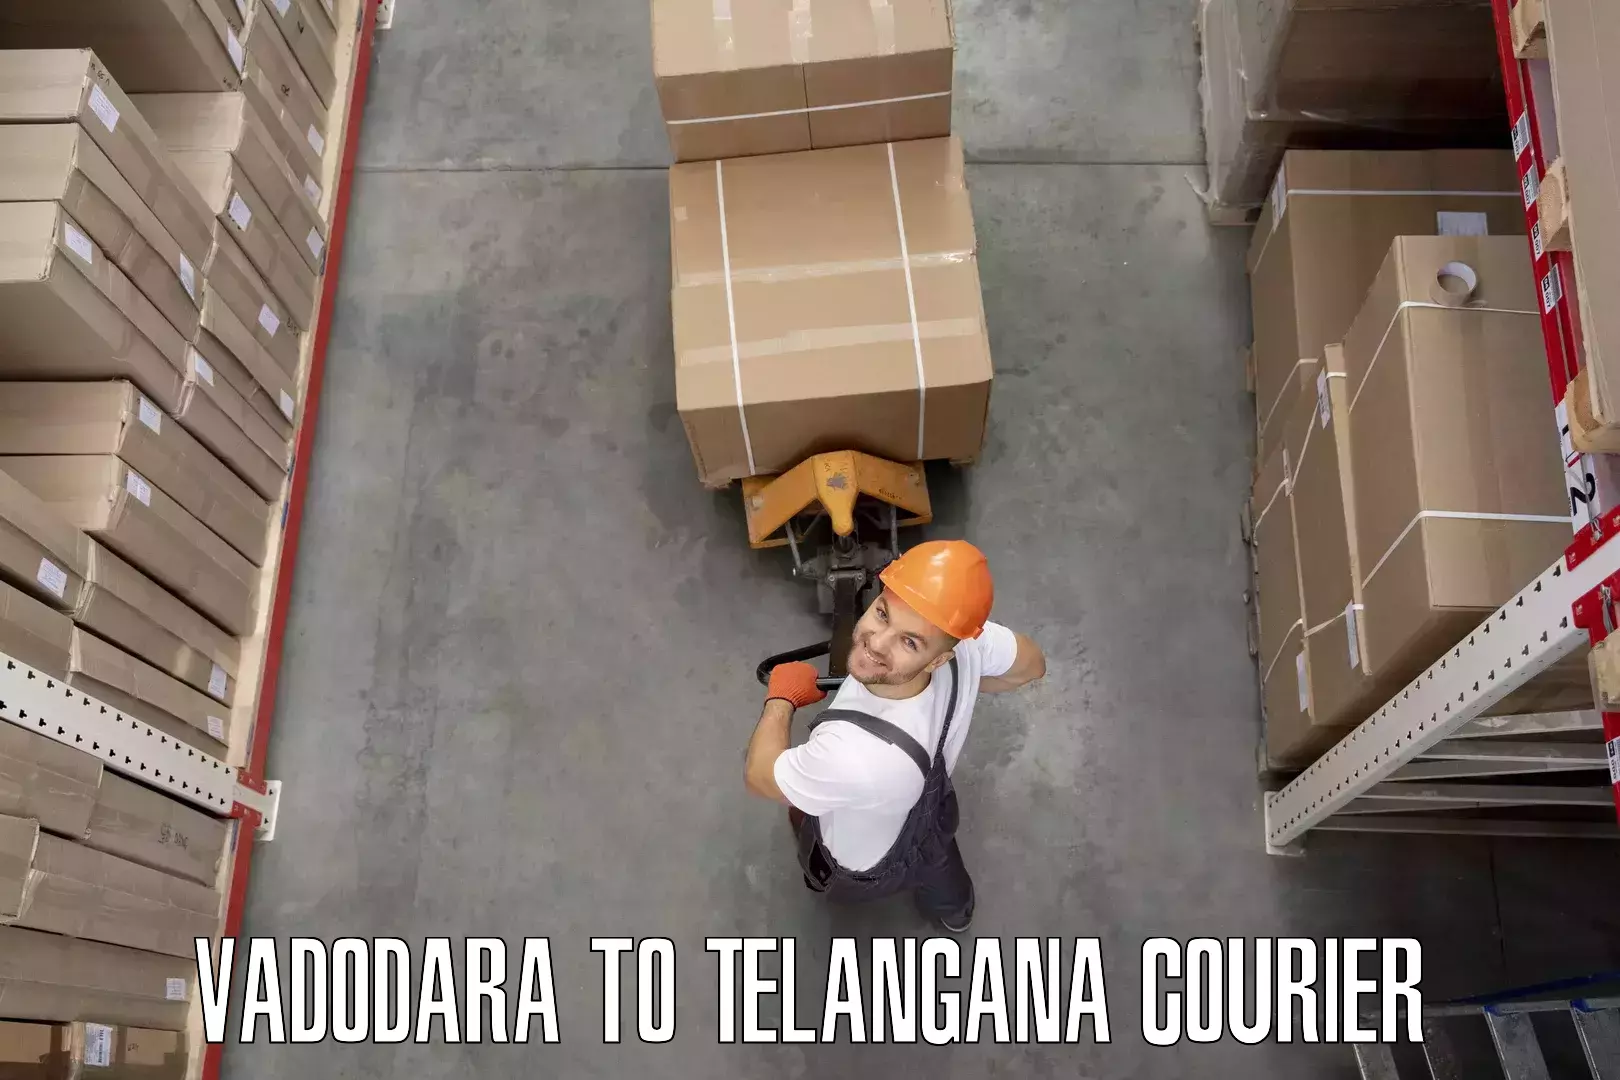 Furniture logistics in Vadodara to Bijinapalle